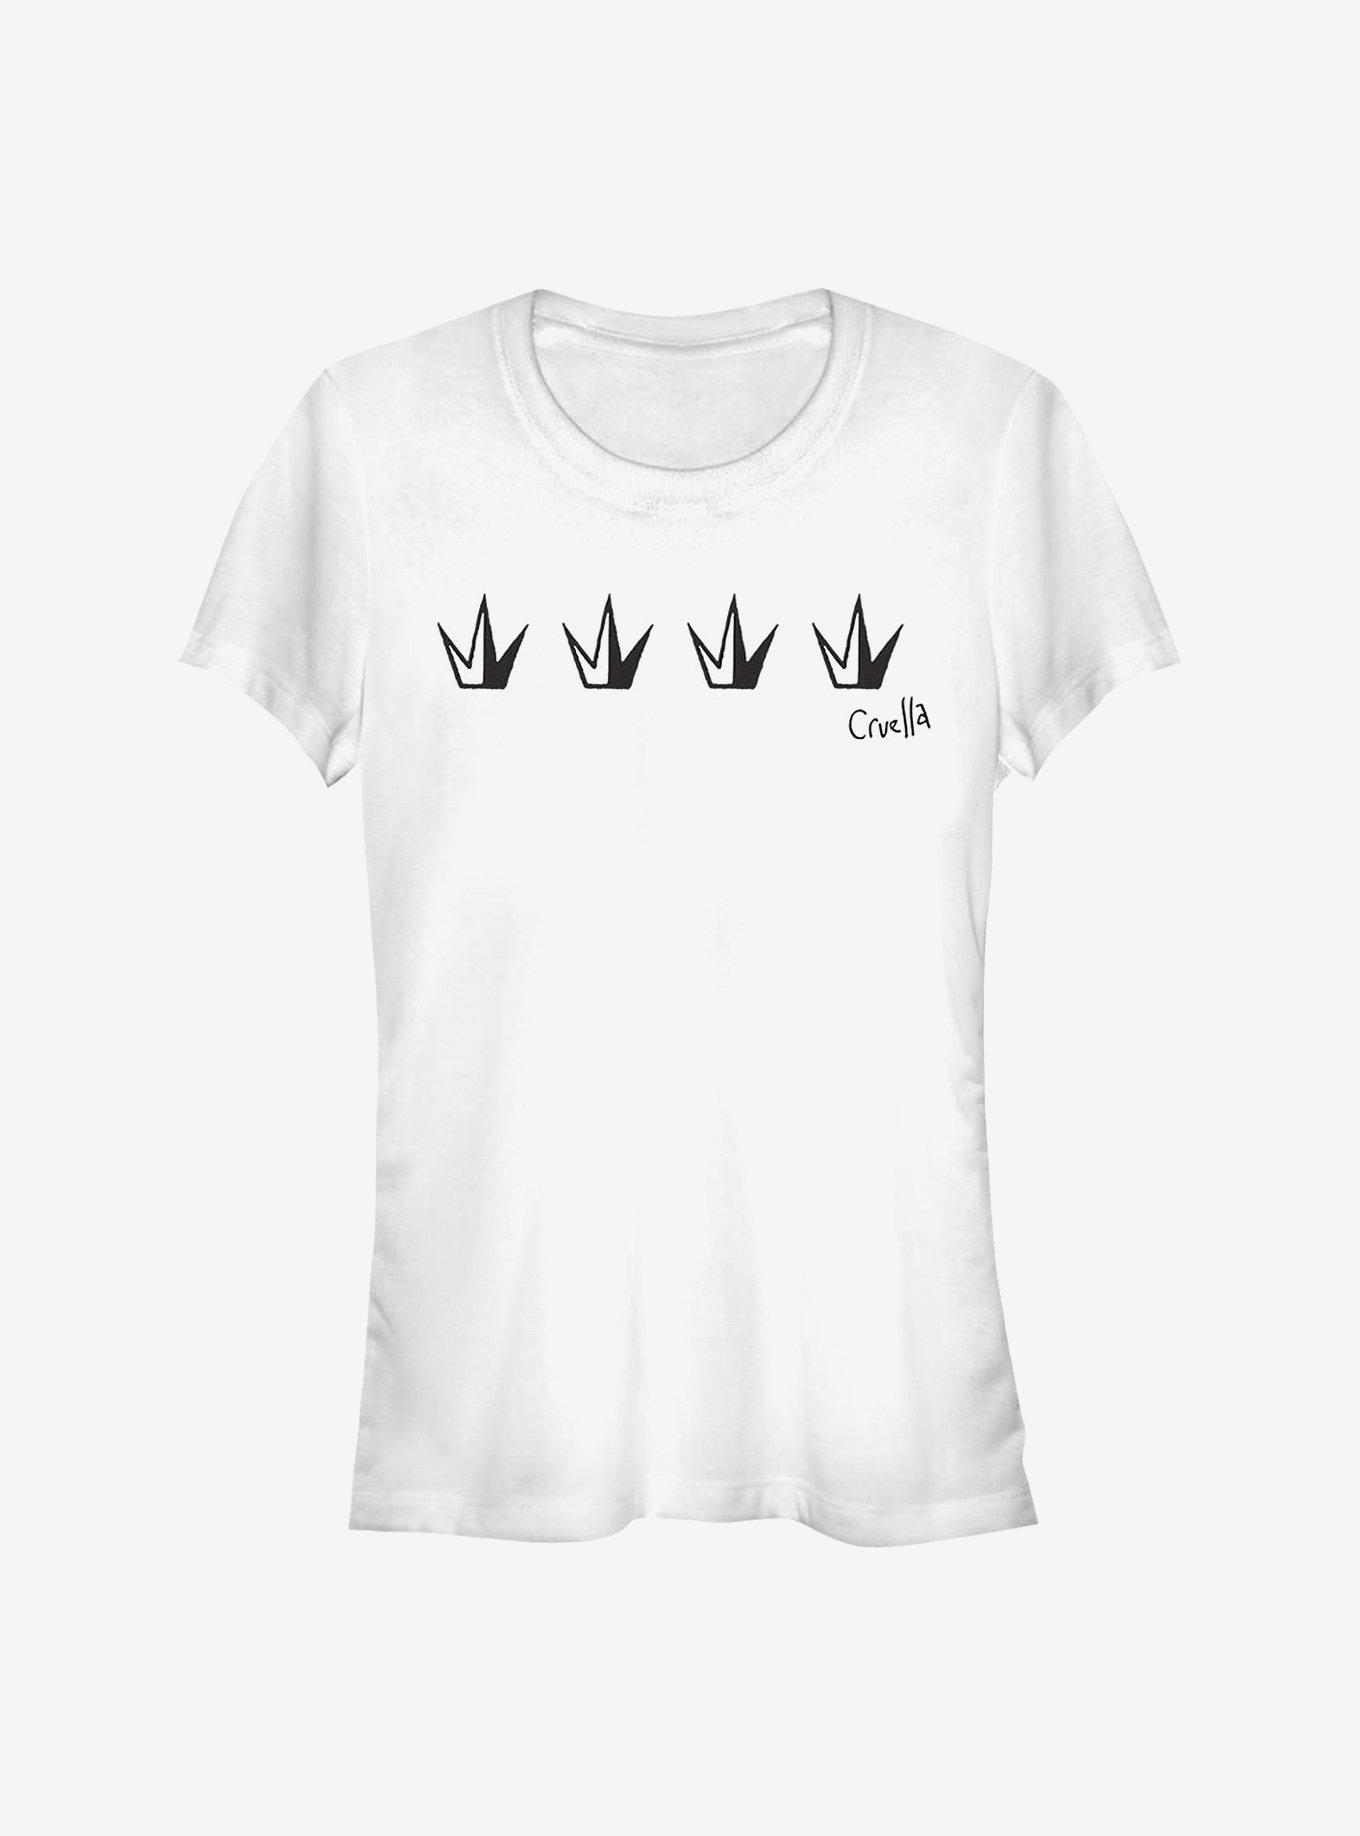 Disney Cruella Crowns Girls T-Shirt, , hi-res